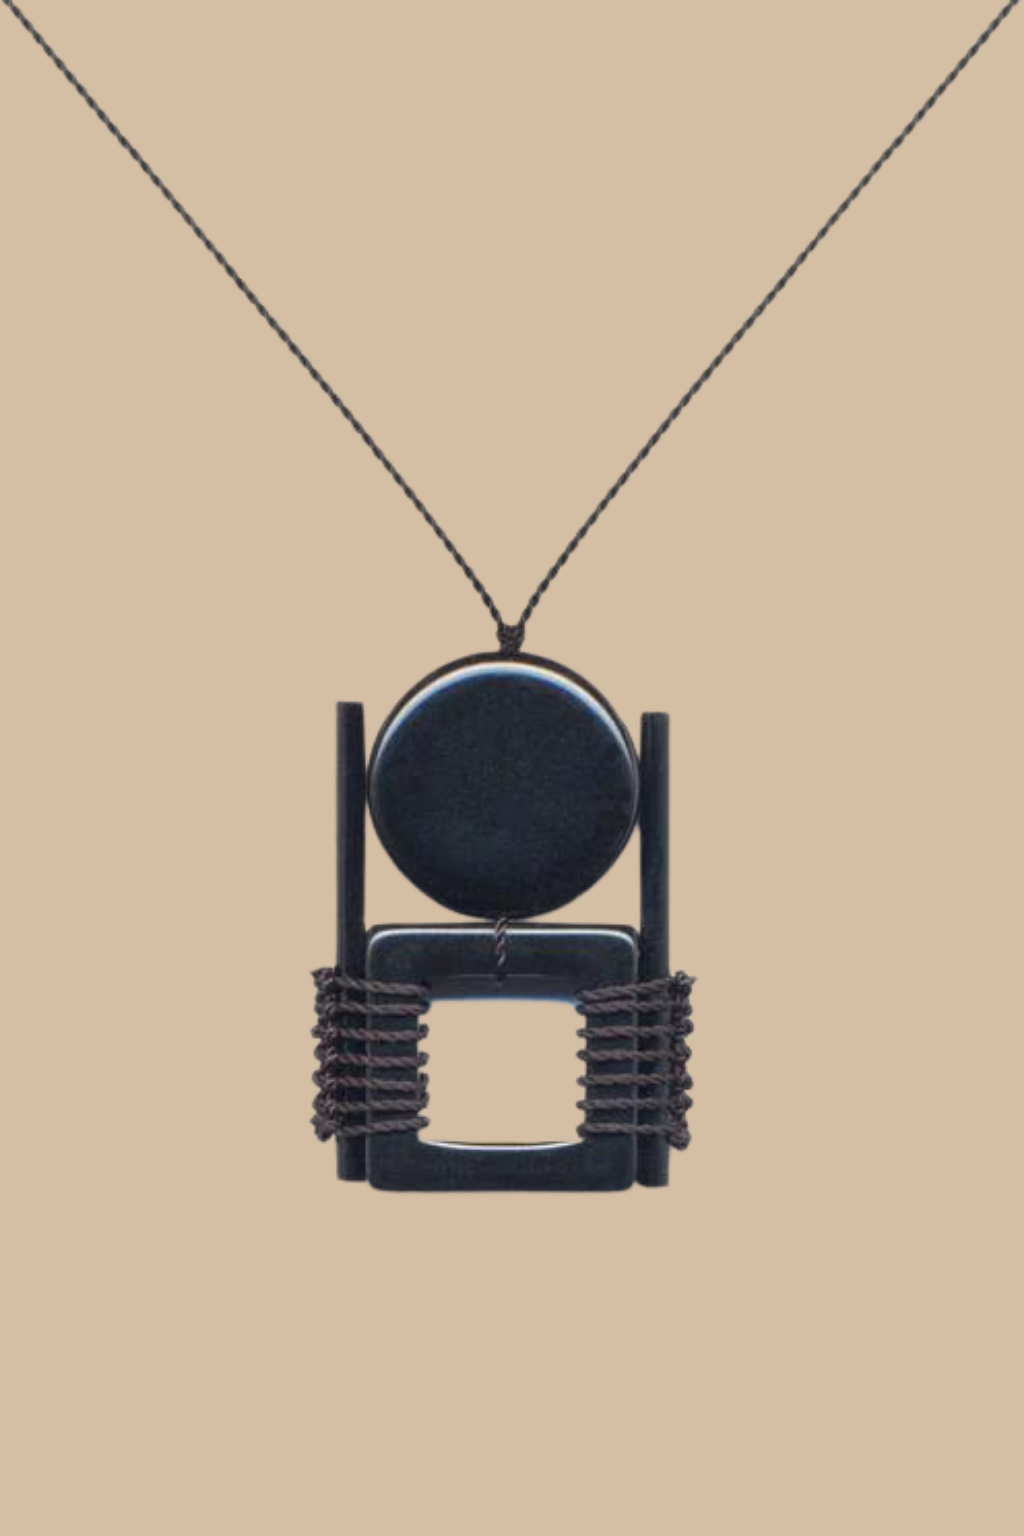 Anni Albers- Black Pendant Necklace